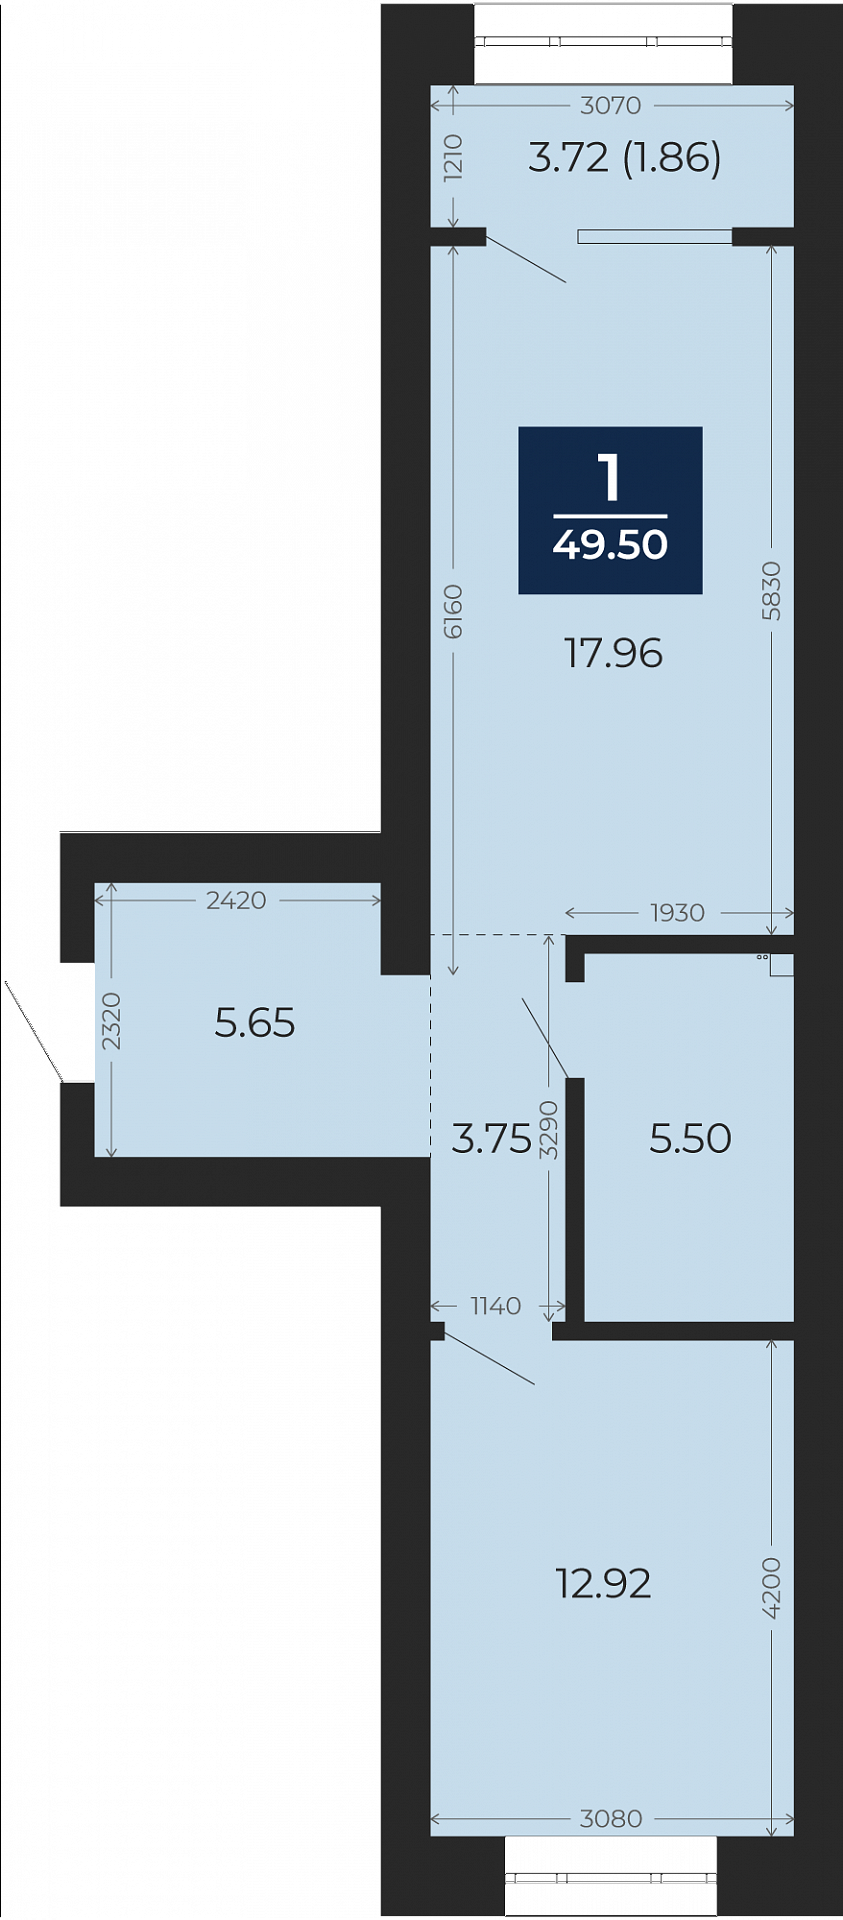 Квартира № 213, 1-комнатная, 49.5 кв. м, 4 этаж